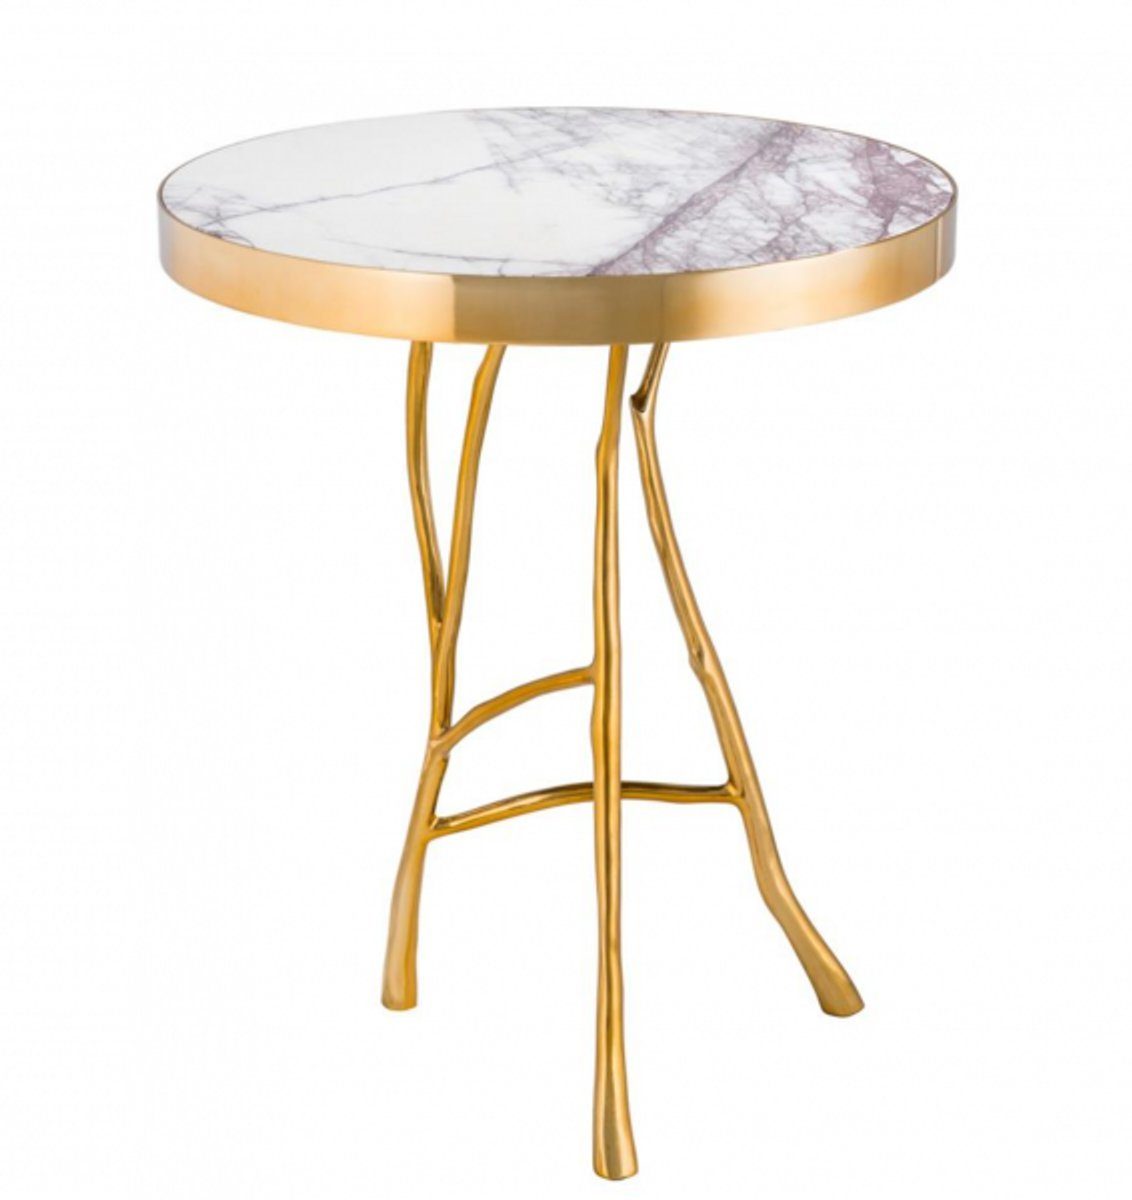 Casa Padrino Beistelltisch Luxus Art Deco Designer Beistelltisch Gold mit weißem Marmor 50 x H 58 cm - Luxus Hotel Tisch